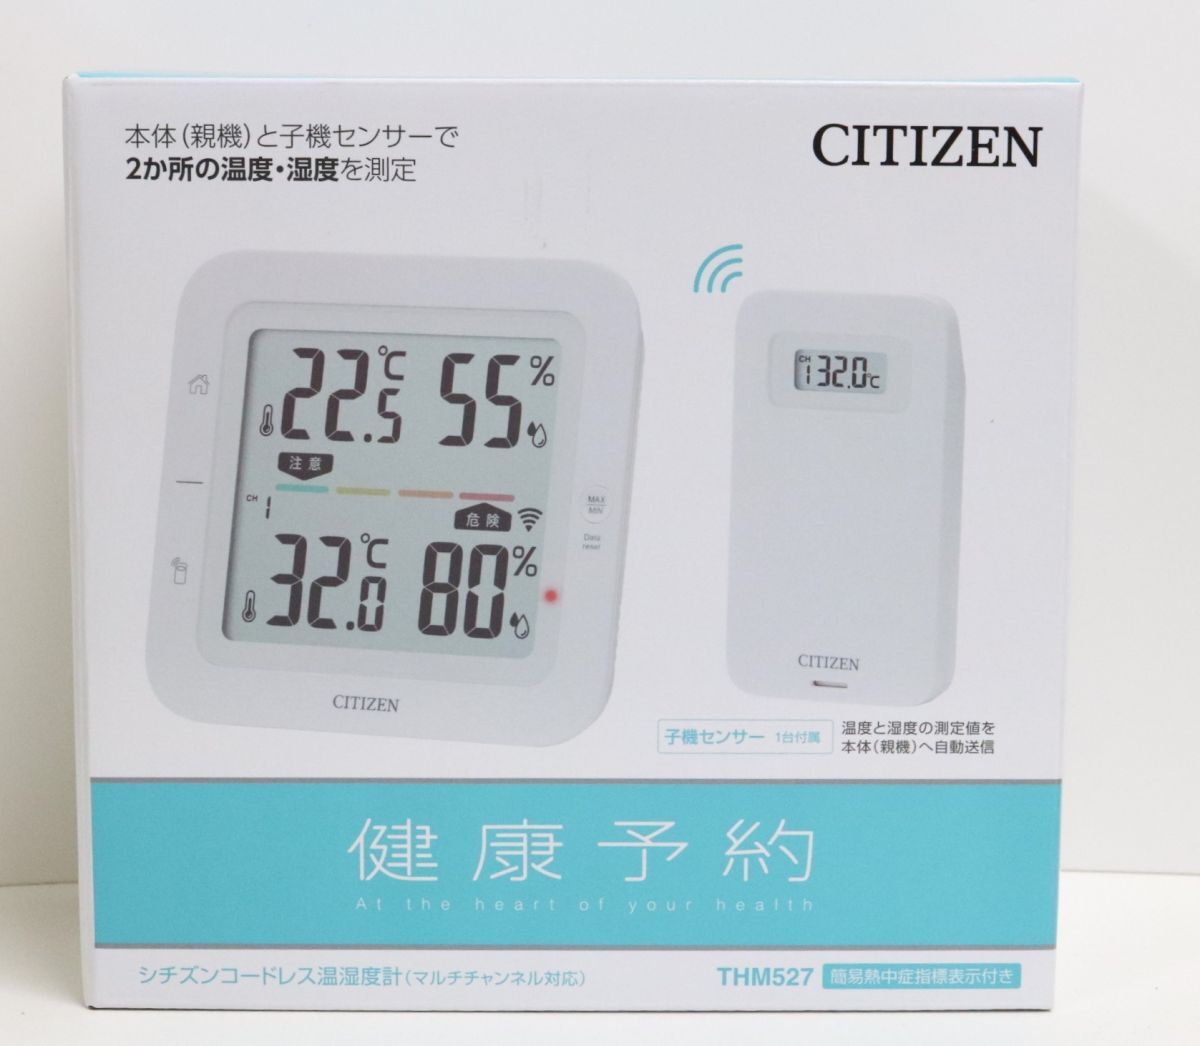 【未使用】CITIZEN シチズン 健康予約 コードレス温湿度計 THM527 マルチチャンネル対応 簡易熱中症指標表示◎5796-1の画像1